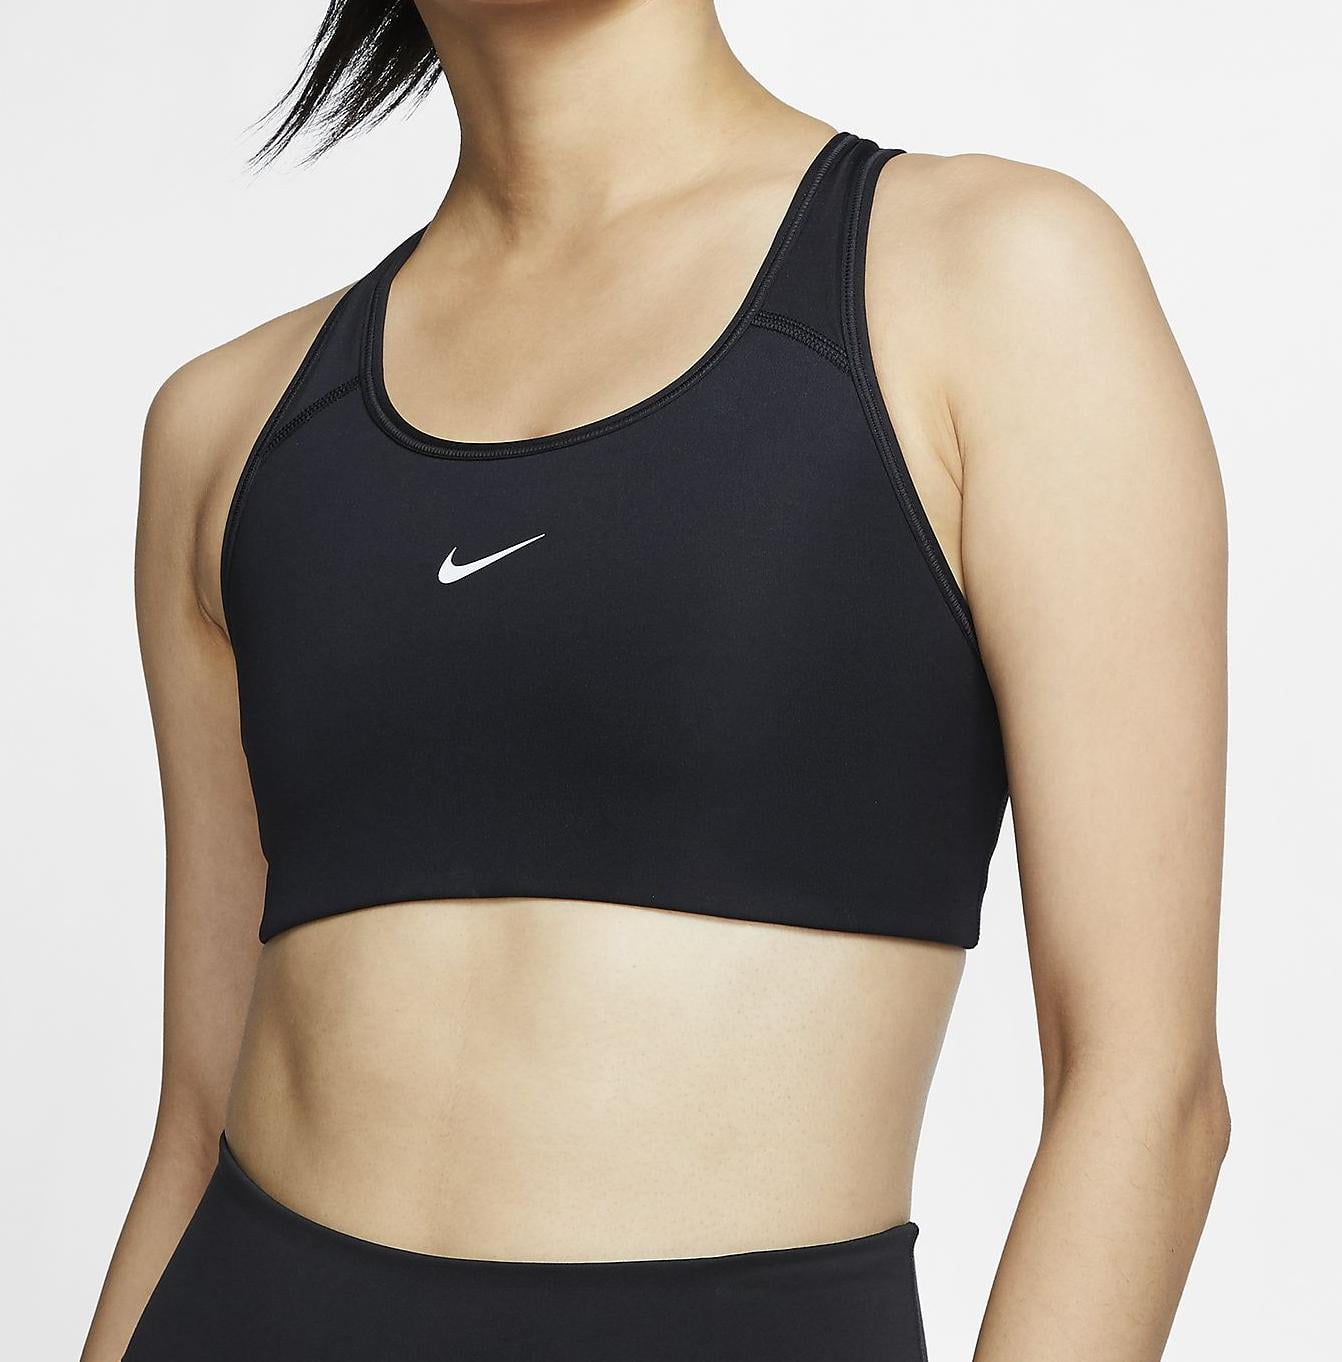 Nike Black Dri-Fit Sports Bra Size XL - $26 (42% Off Retail) - From